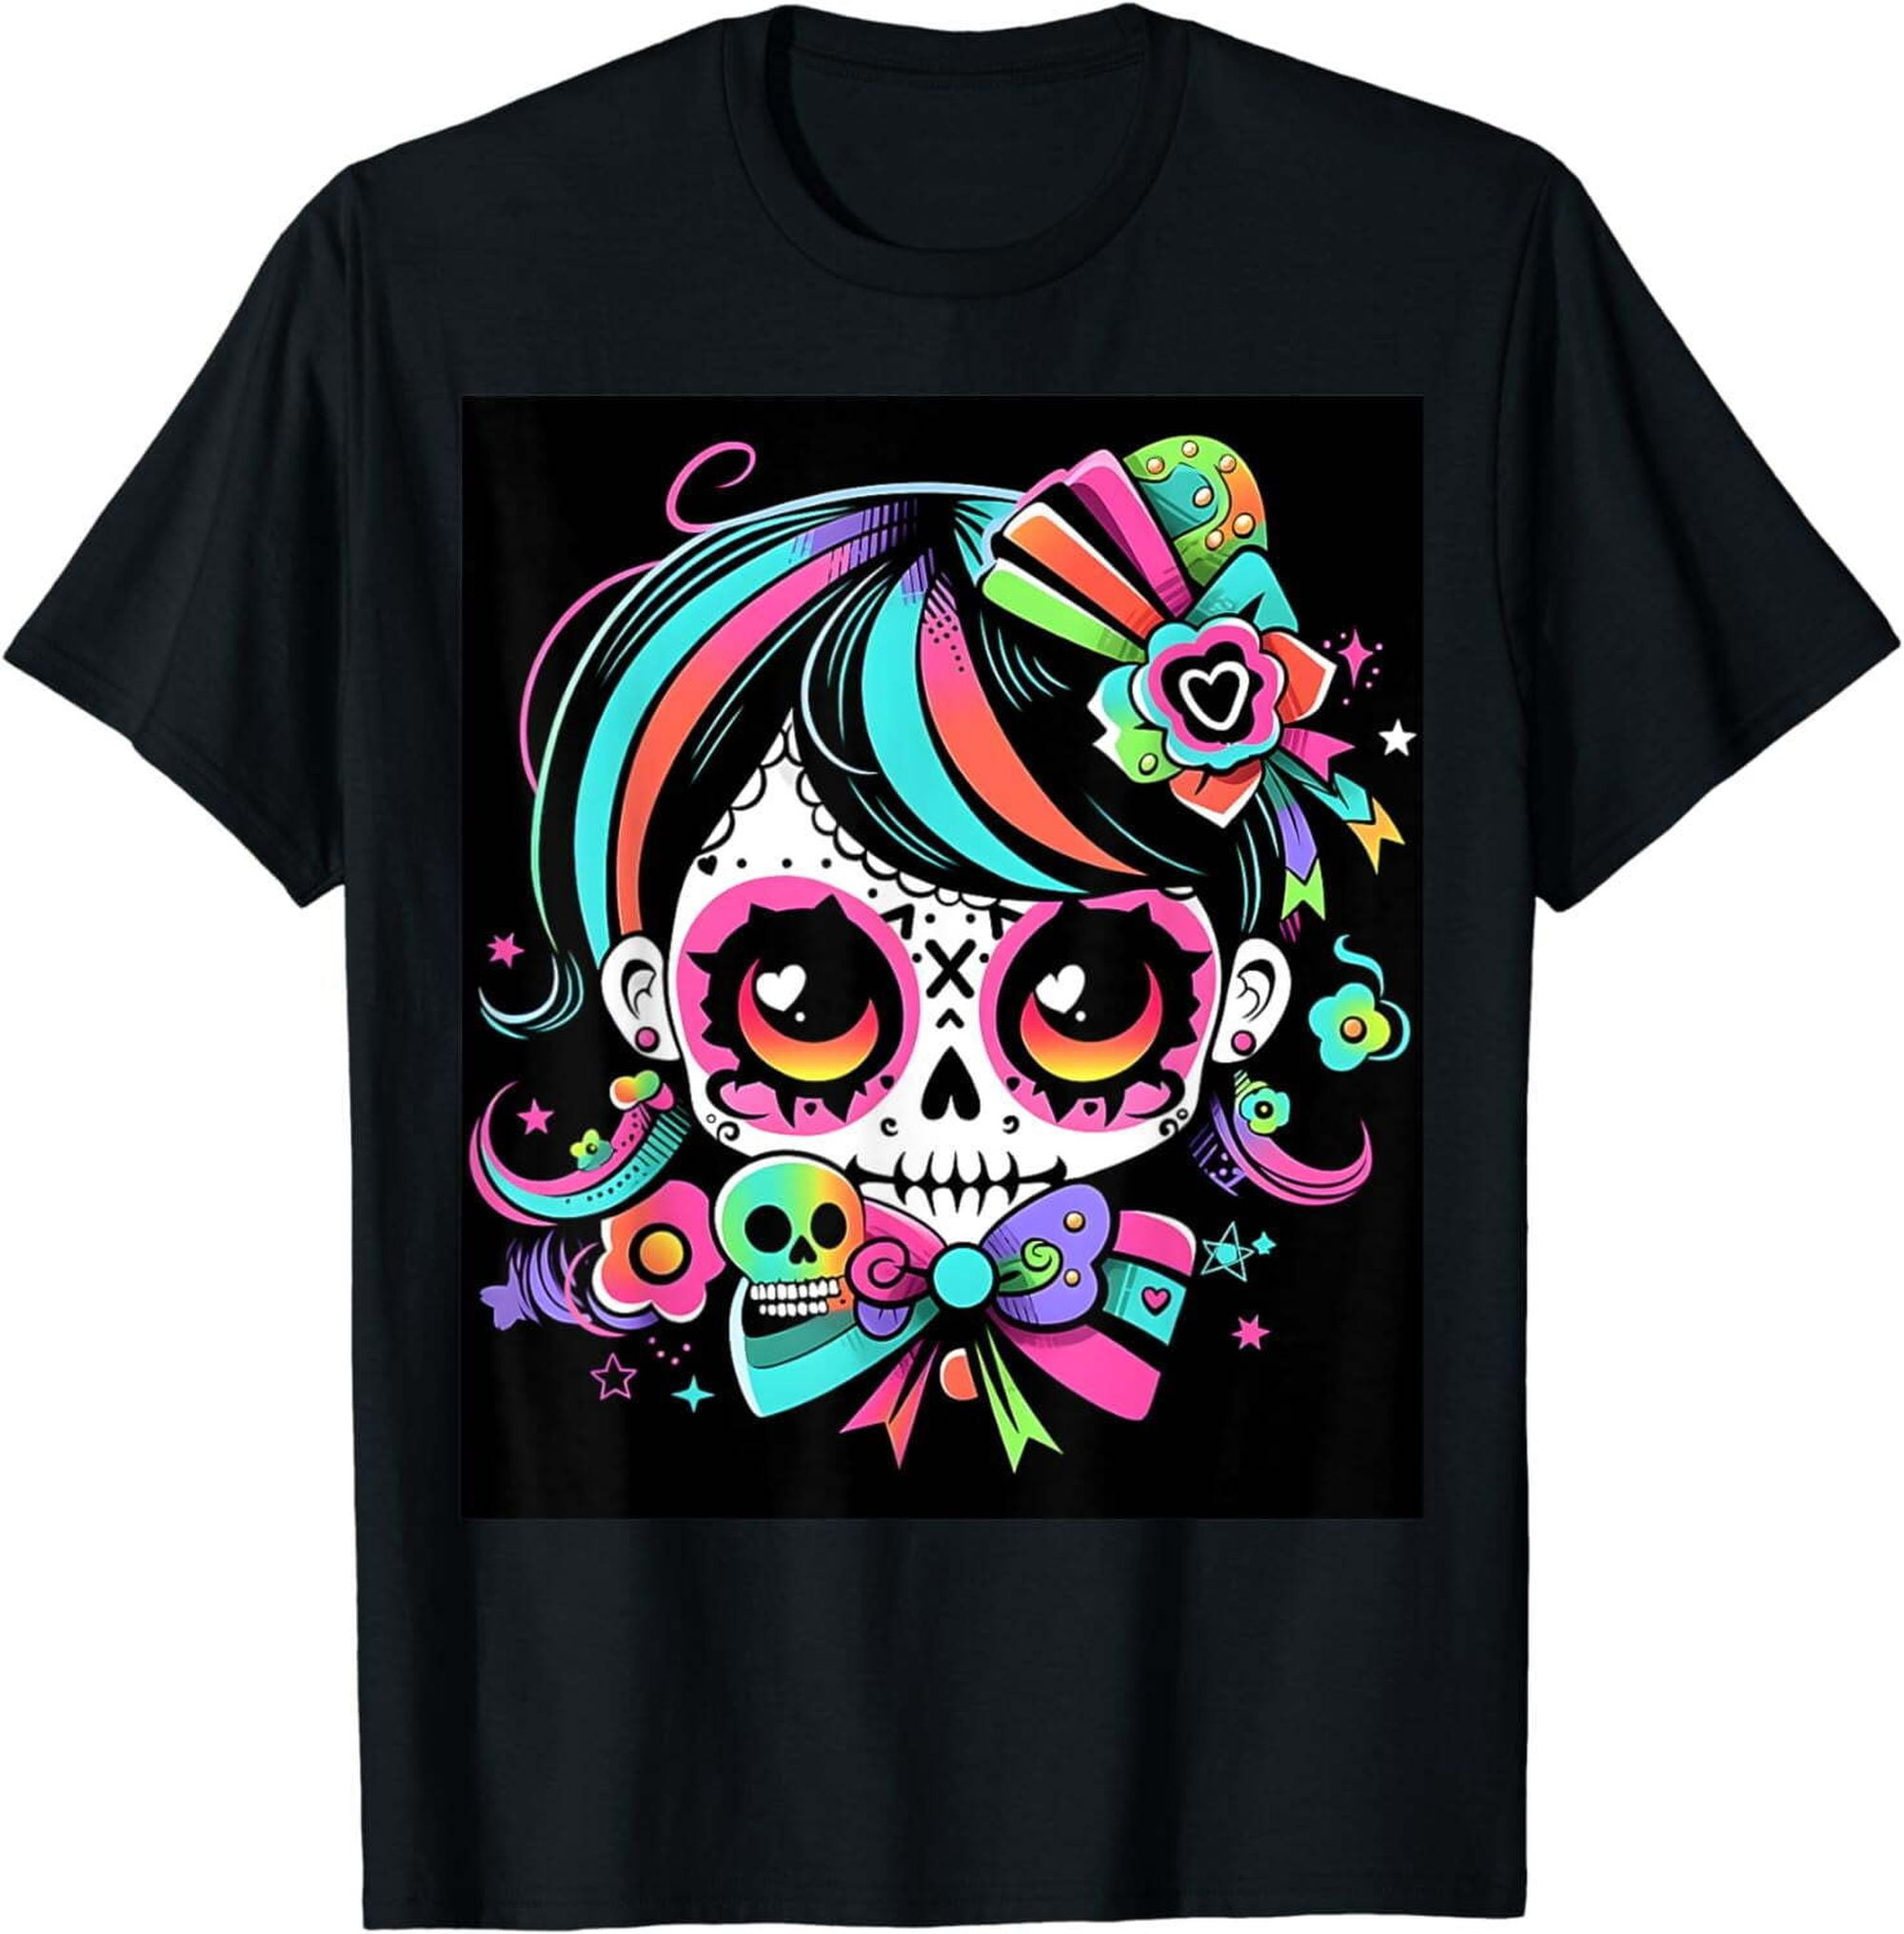 Spine-tingling Halloween Skull Graphic Design Women's Men's T-Shirt ...